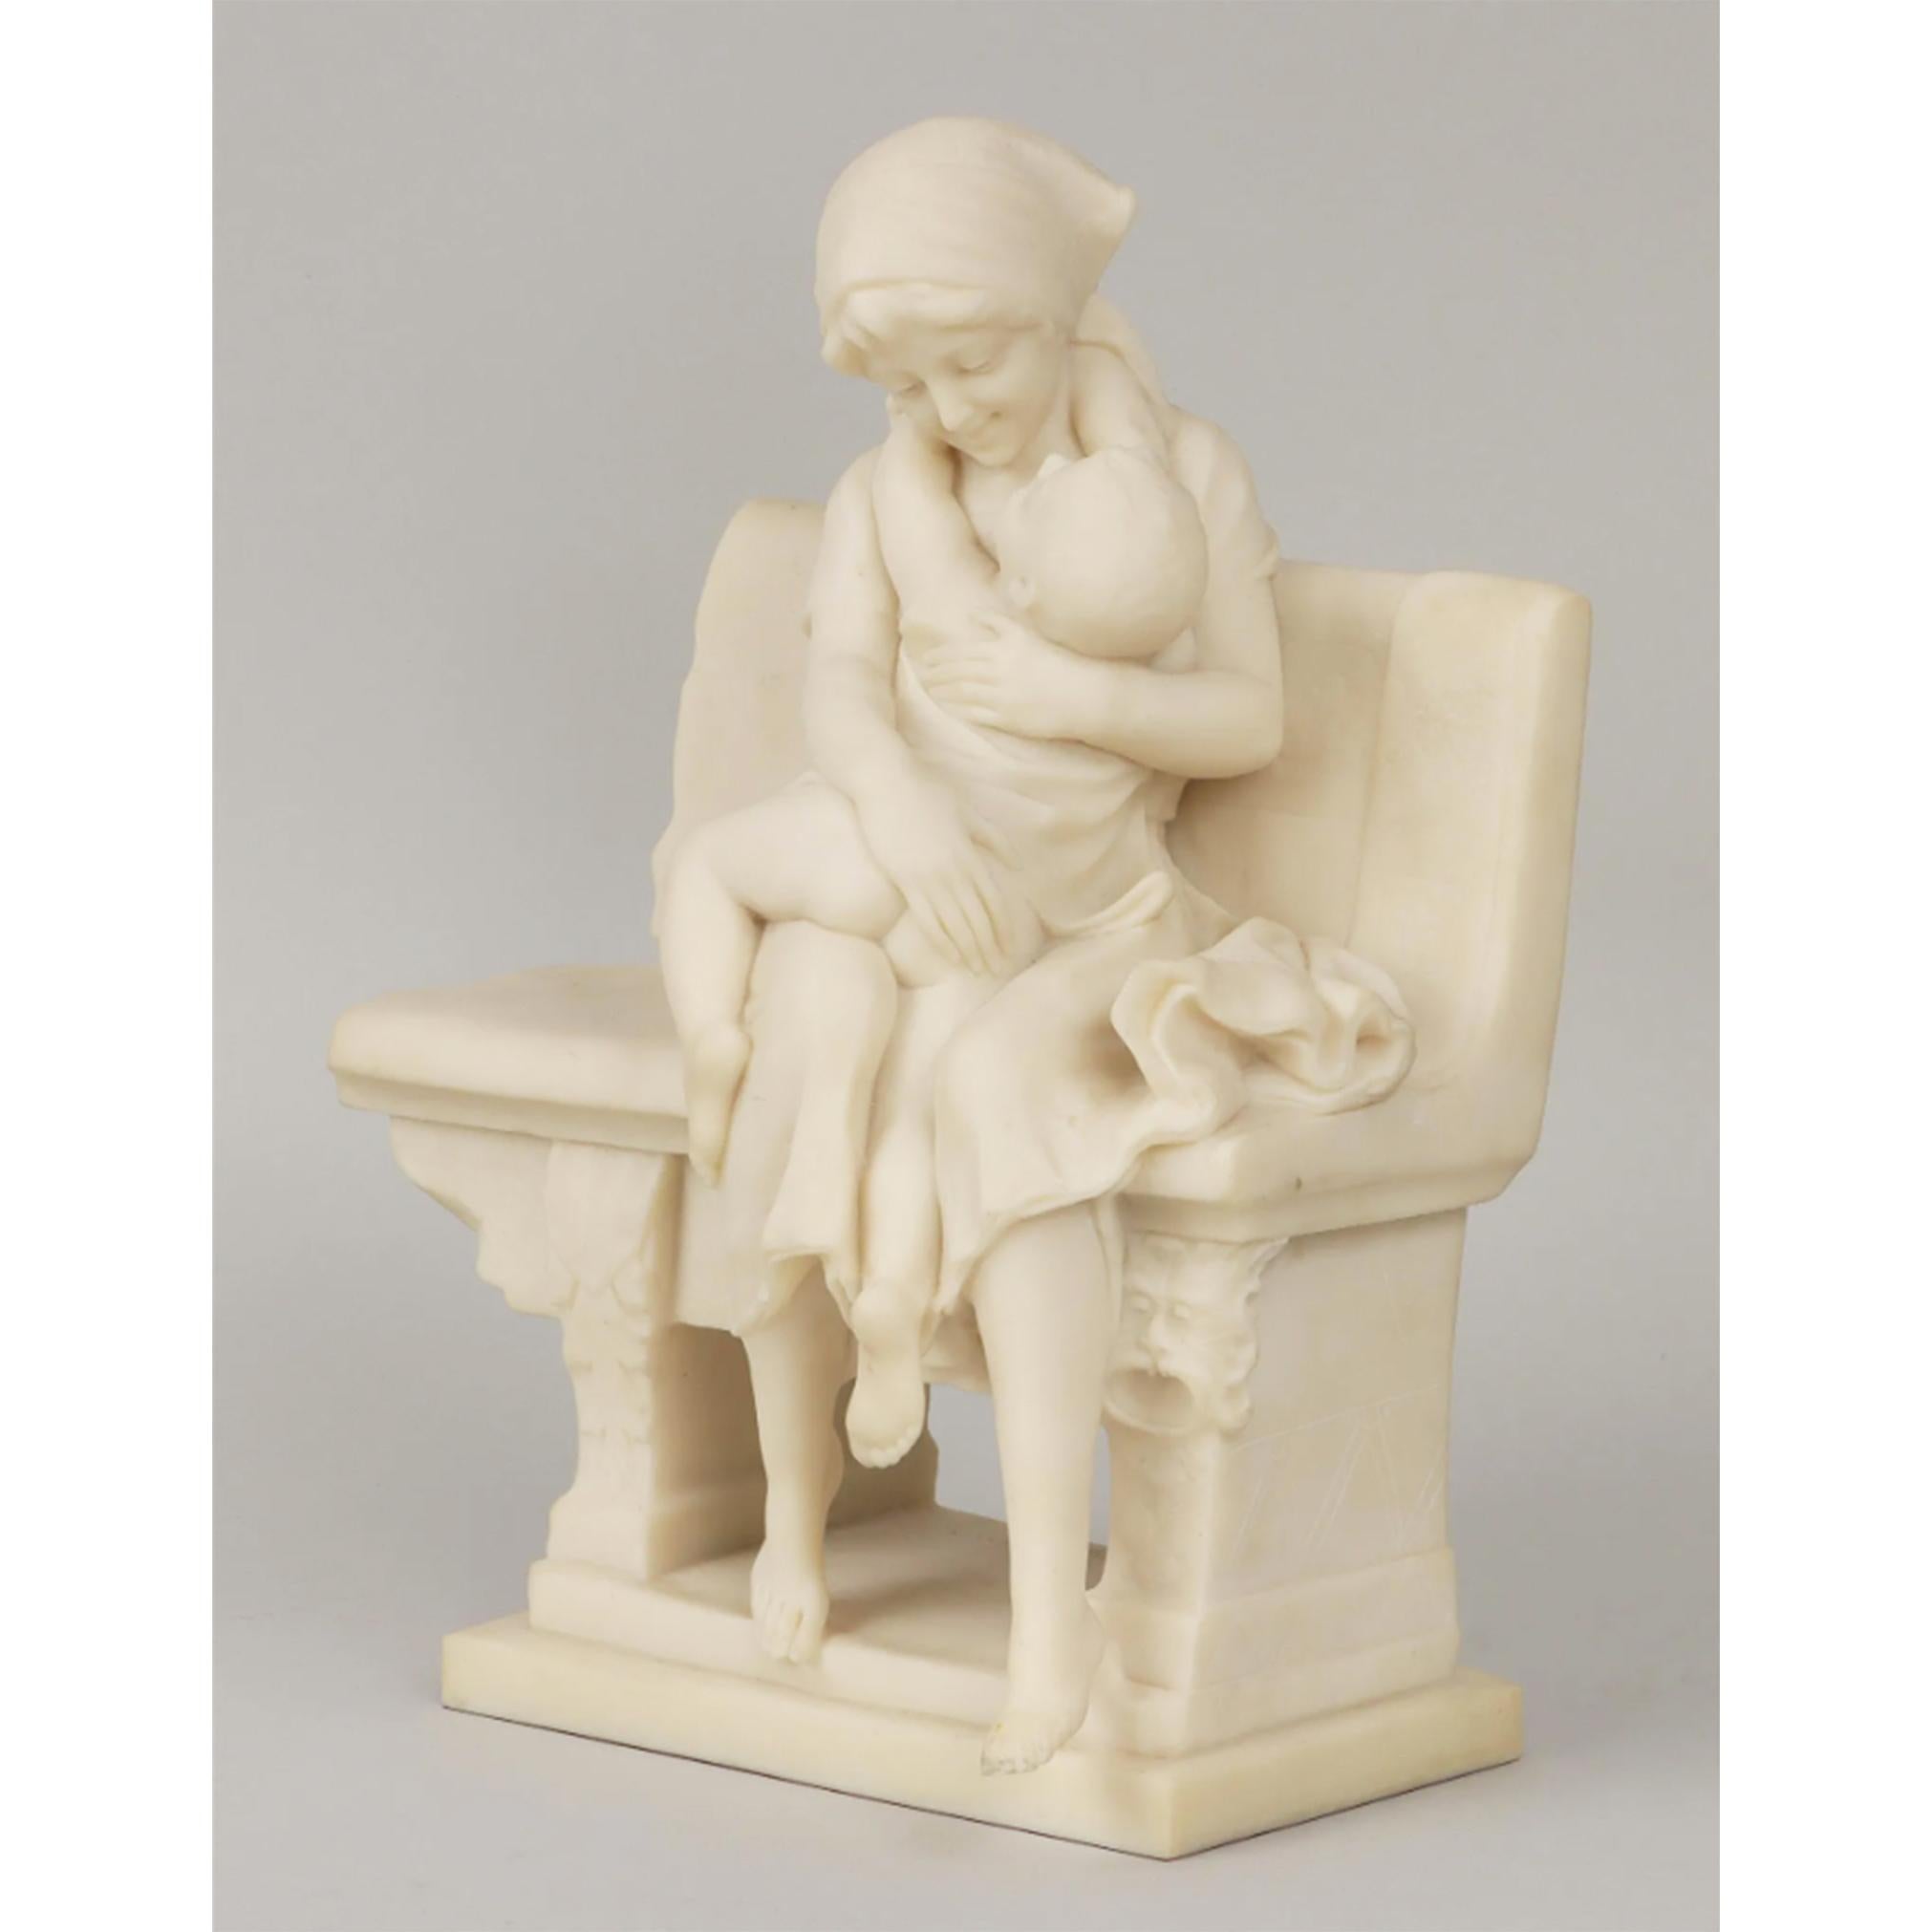 Statue en marbre italien représentant une jeune mère rieuse et son enfant enlacés sur un banc fragmenté avec des détails en bas-relief par Antonio Frilli (italien, 1860-1920). Cet exemple est caractéristique d'autres sculptures de Frilli